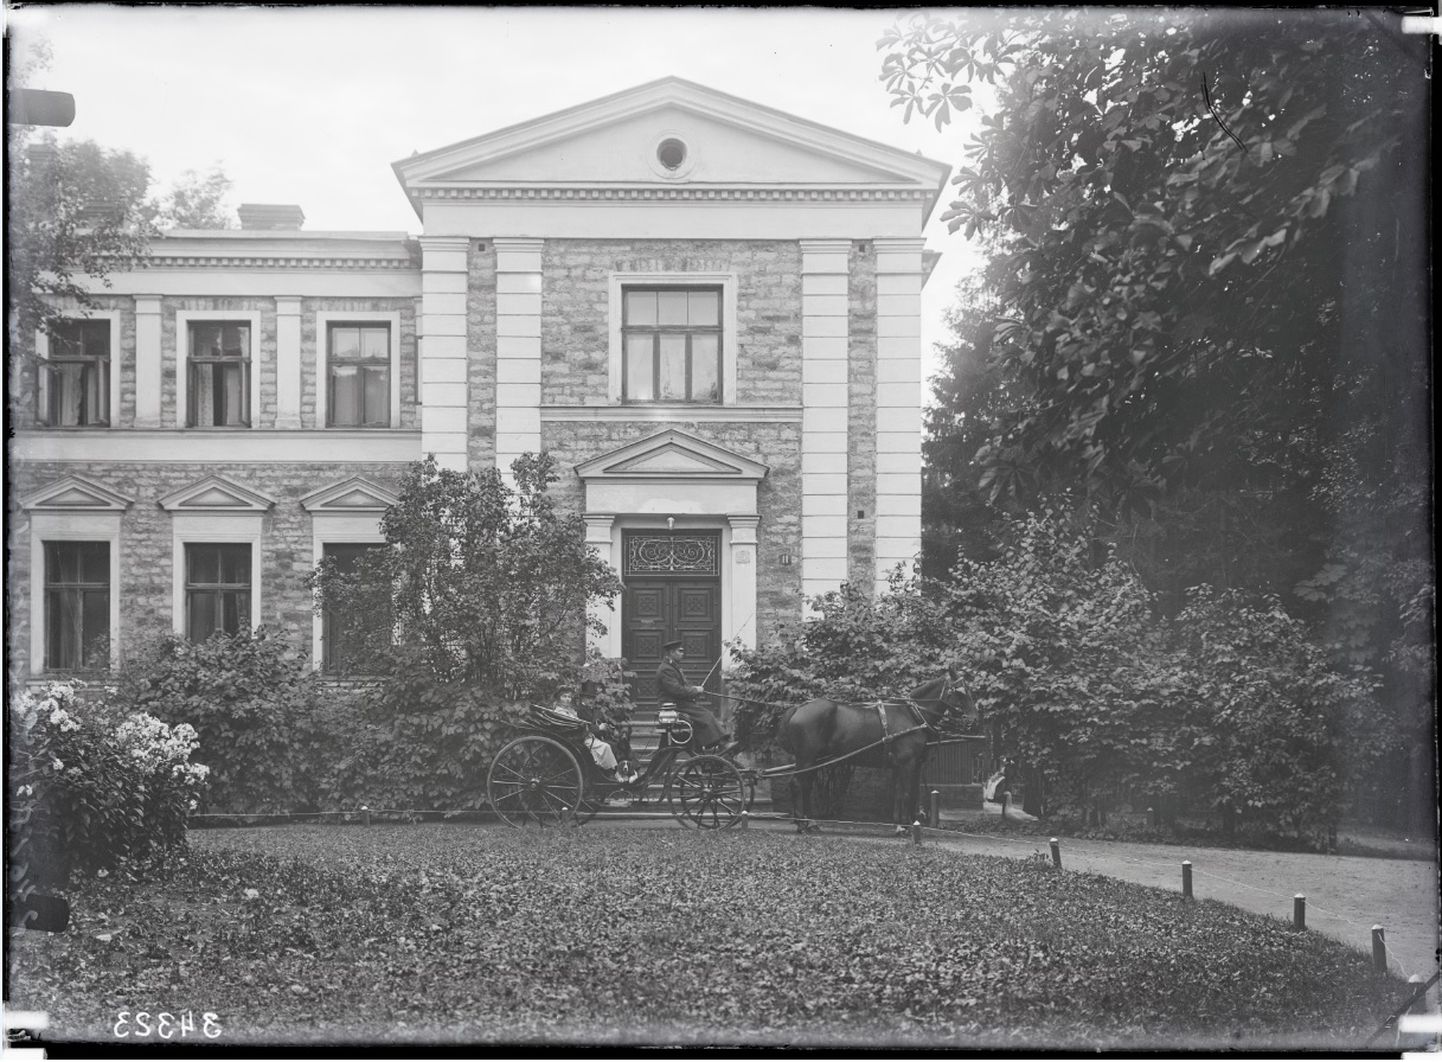 Довоенное здание посольства Германии (1930 год) не сохранилось после бомбежки 1944 года. Однако дипмиссия этой страны в Эстонии продолжает работать на прежнем месте, правда, в новых помещениях.